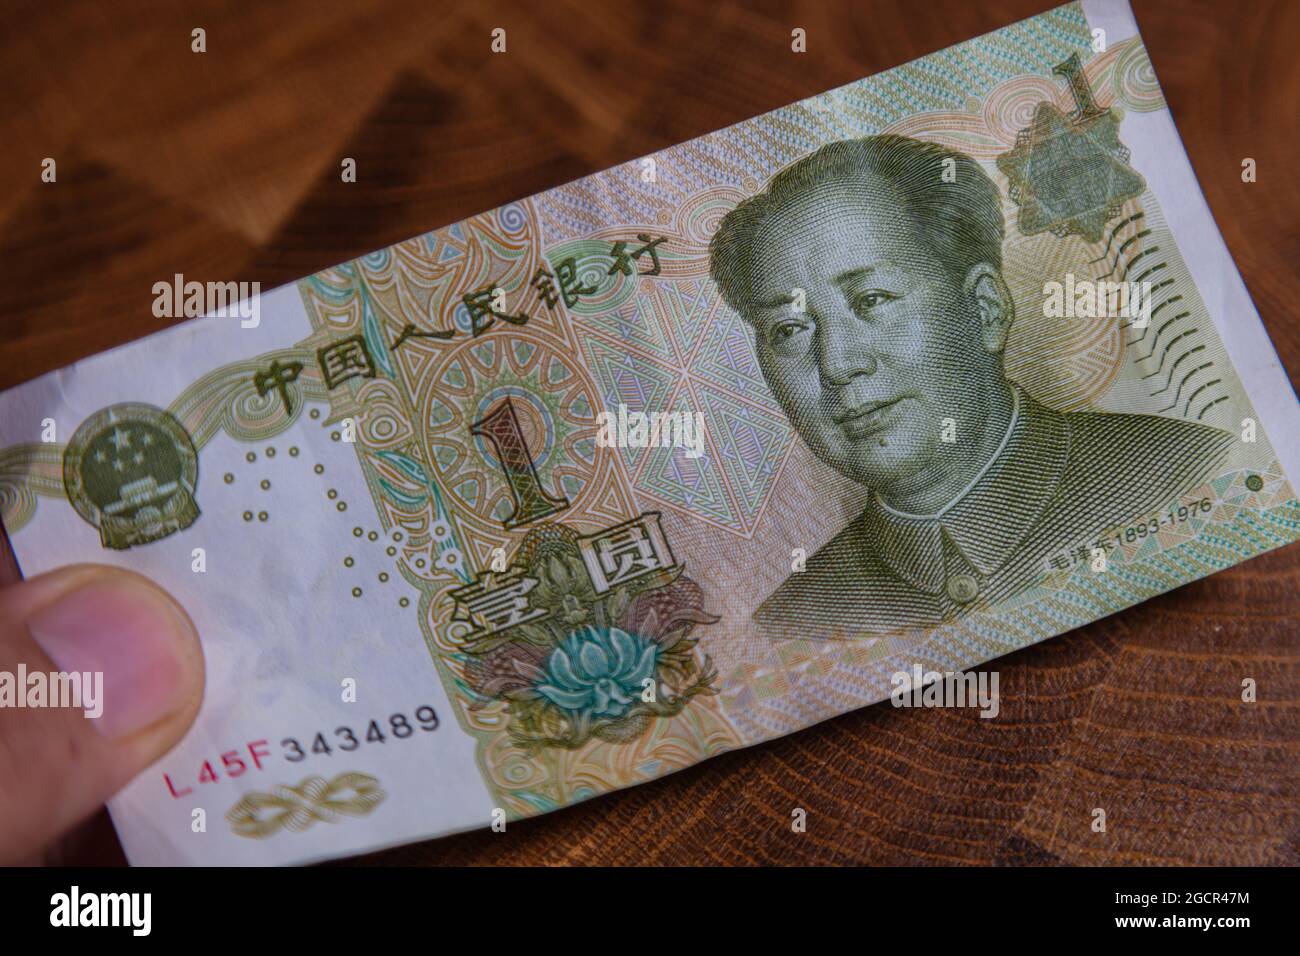 La main masculine tient un fan de 1 renminbi ou yuan chinois ou un billet de banque en RMB abrégé, la monnaie officielle de la république populaire de chine. À l'avant Banque D'Images